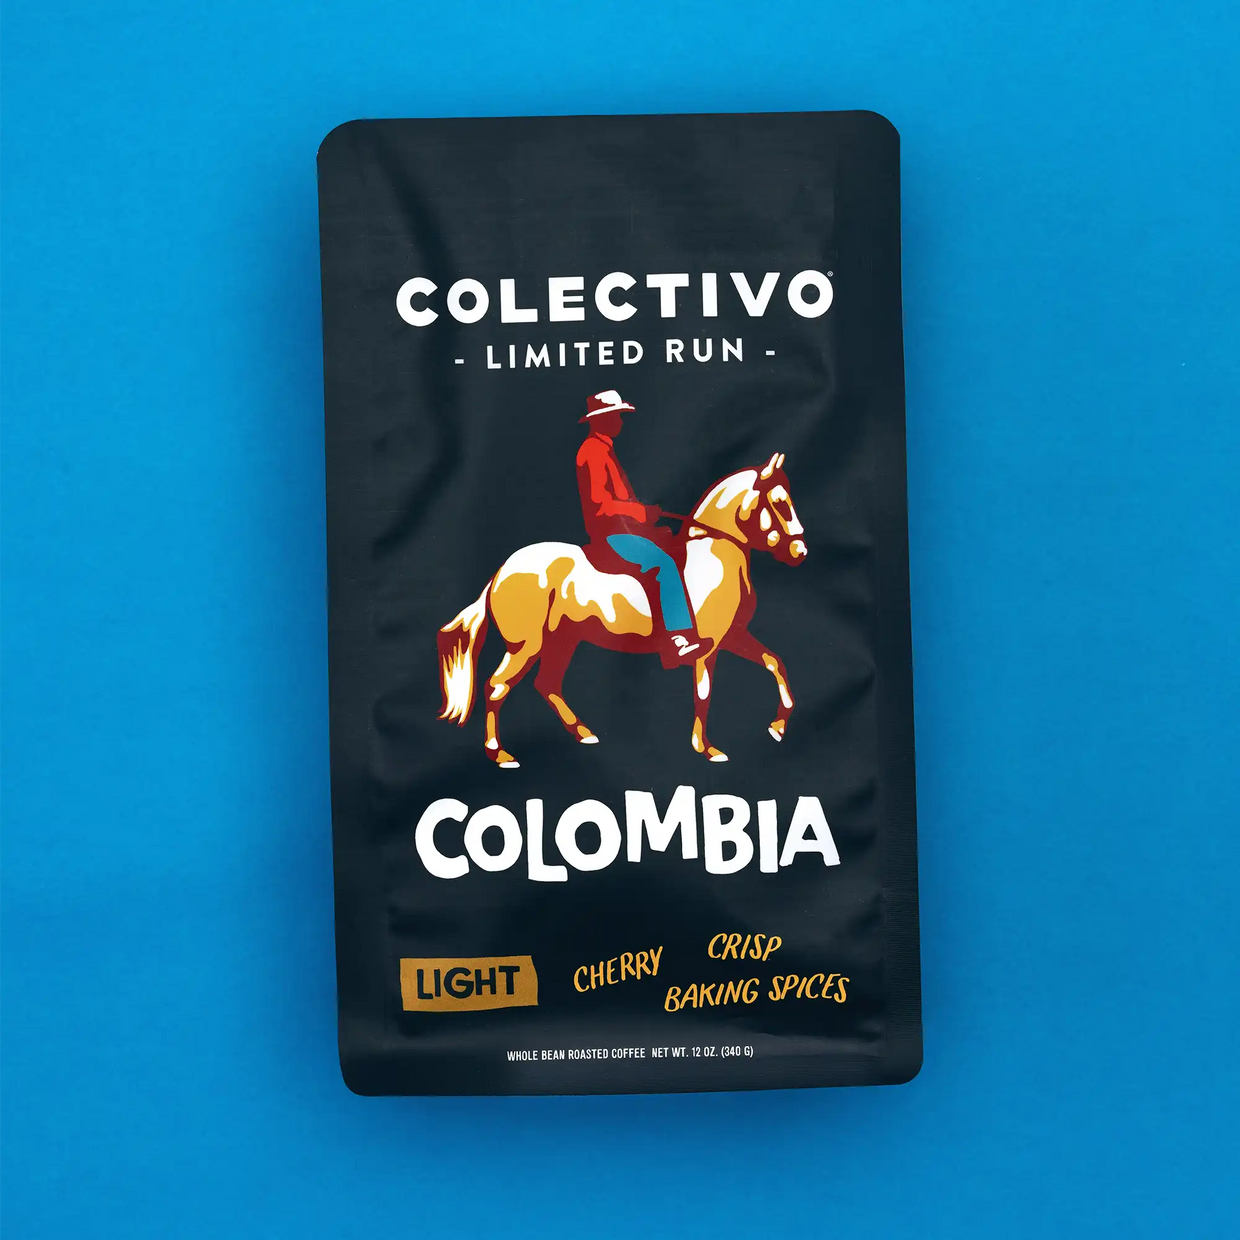 Colombia Paso Fino